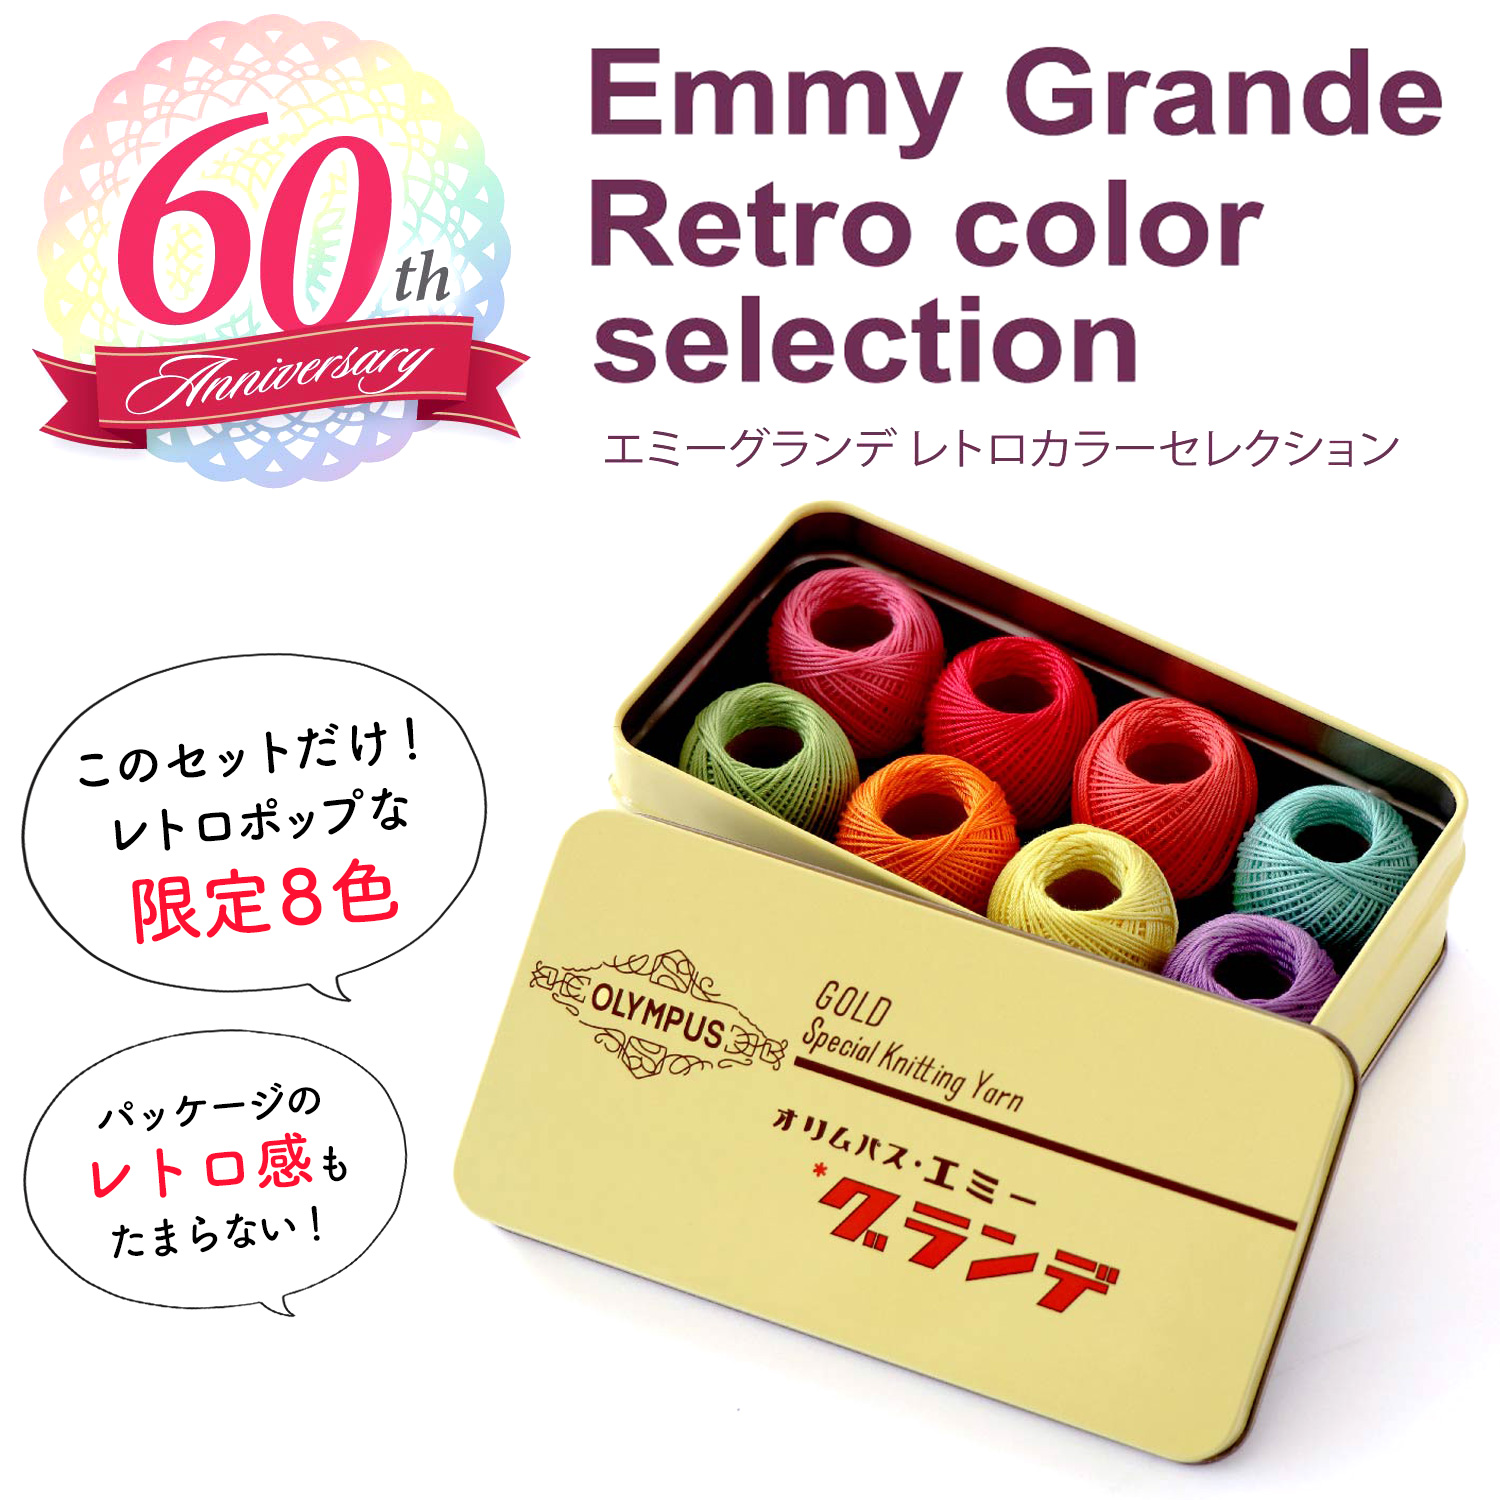 【数量限定】OLY07945 エミーグランデ 缶入りレトロカラーコレクション (セット)